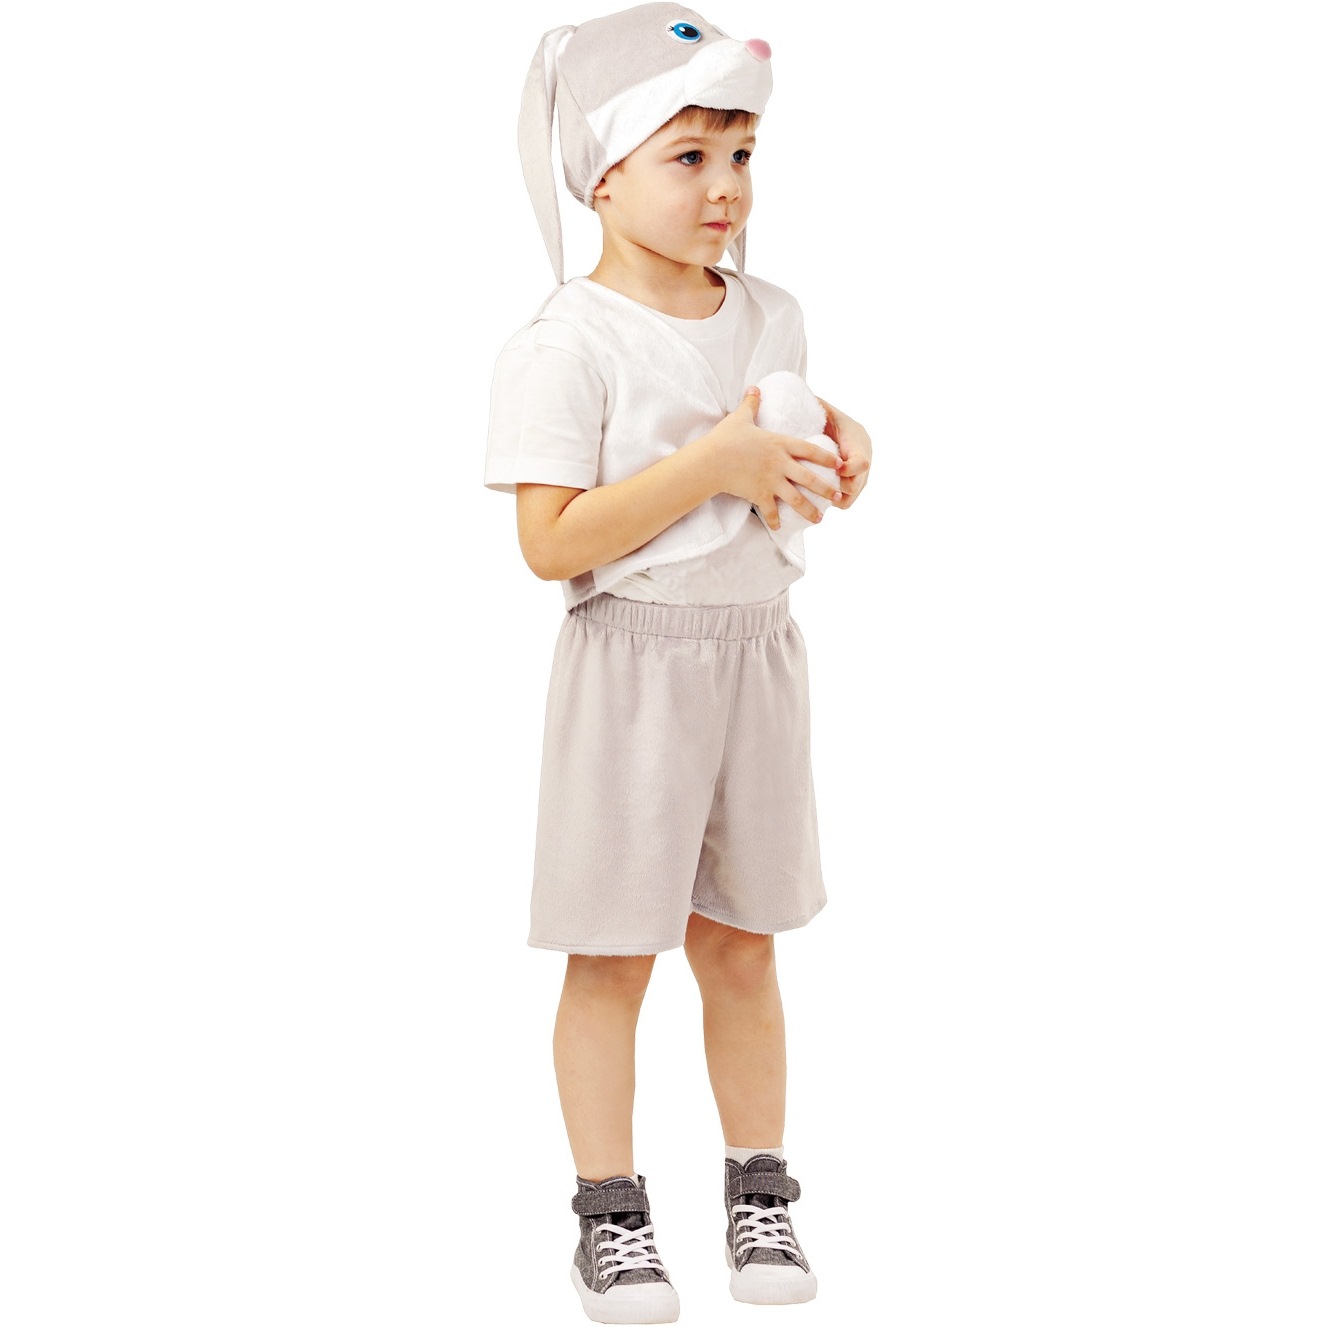 Карнавальный костюм "Заяц серый прошка" (жилет, шорты, шапка) размер 98-52